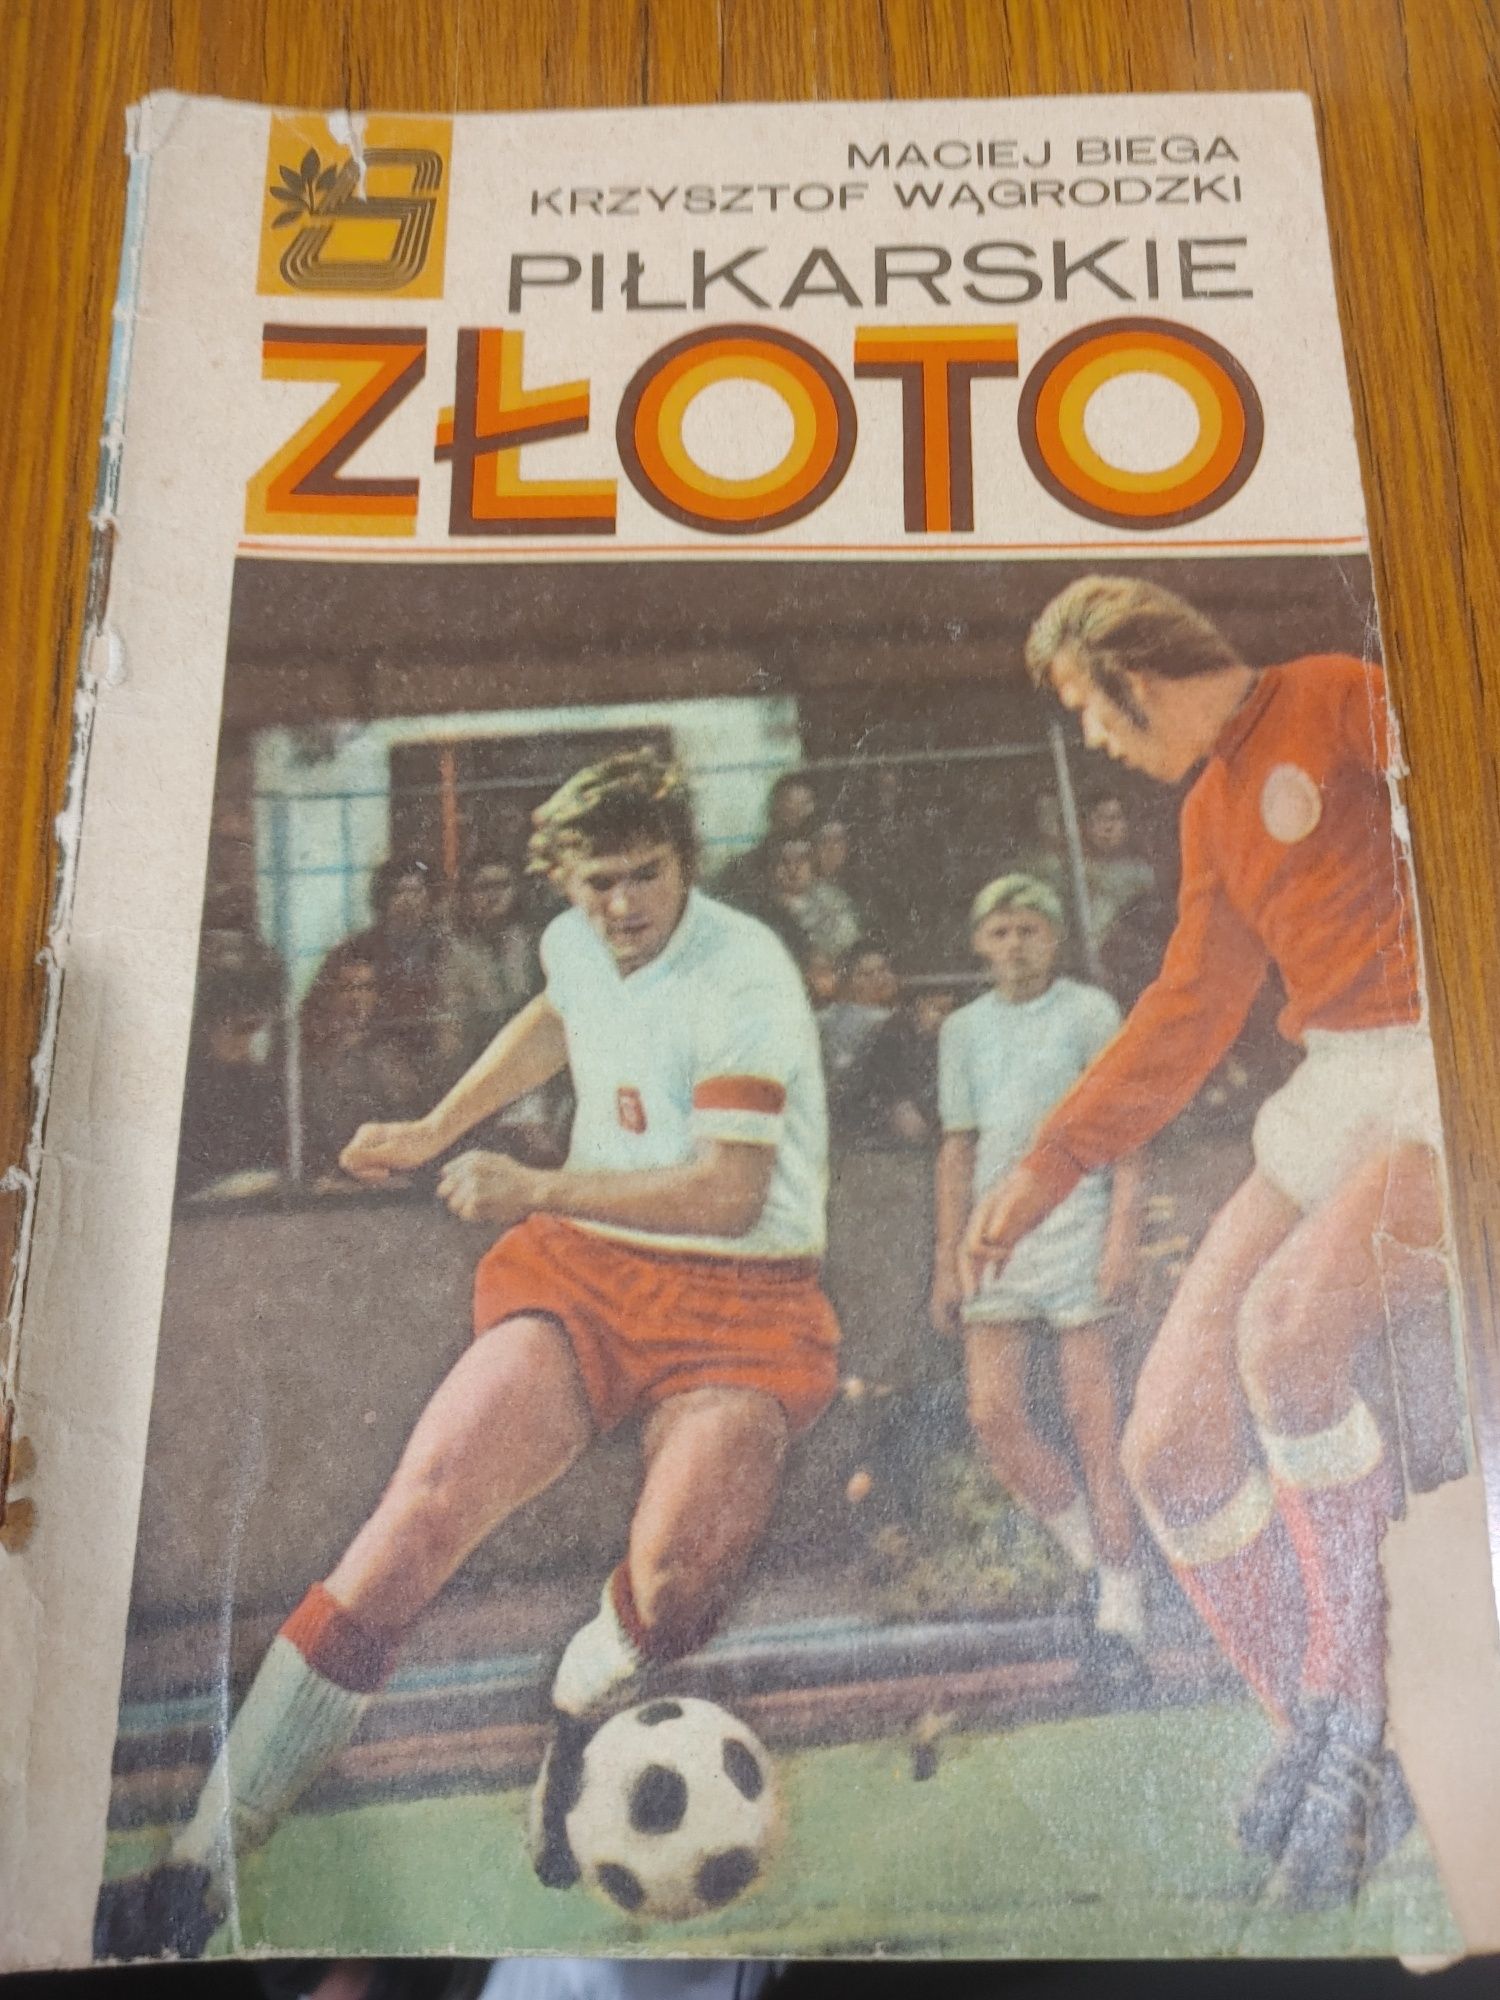 Piłkarskie złoto.  Maciej Biega Krzysztof Węgrodzki.